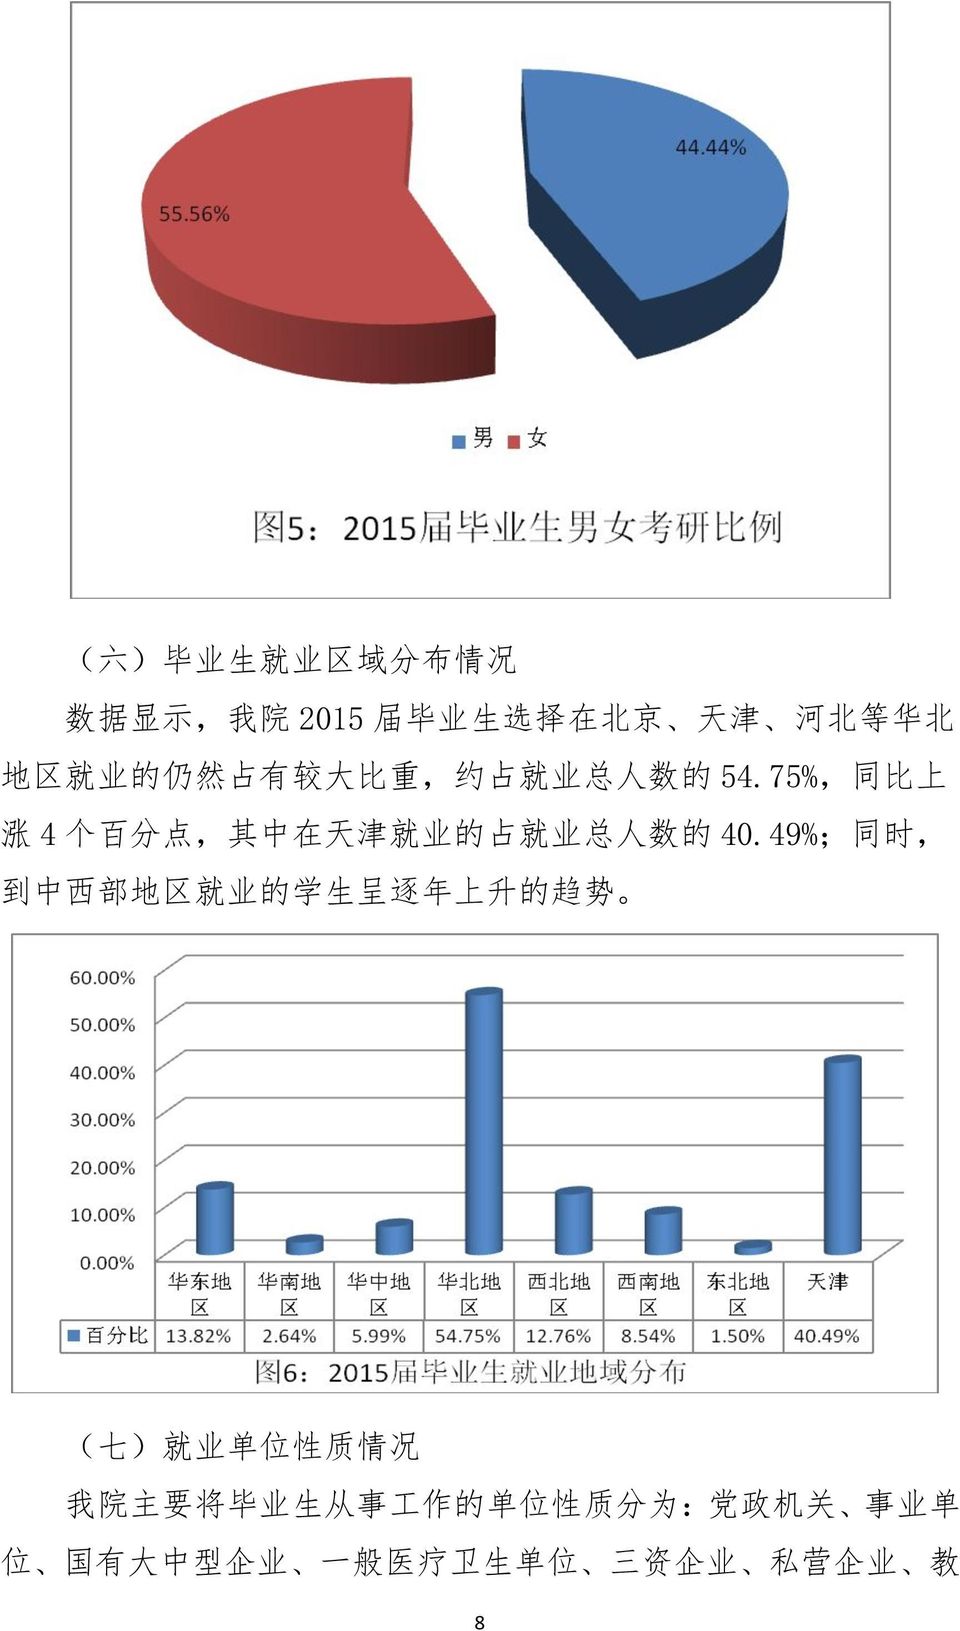 75%, 同 比 上 涨 4 个 百 分 点, 其 中 在 天 津 就 业 的 占 就 业 总 人 数 的 40.